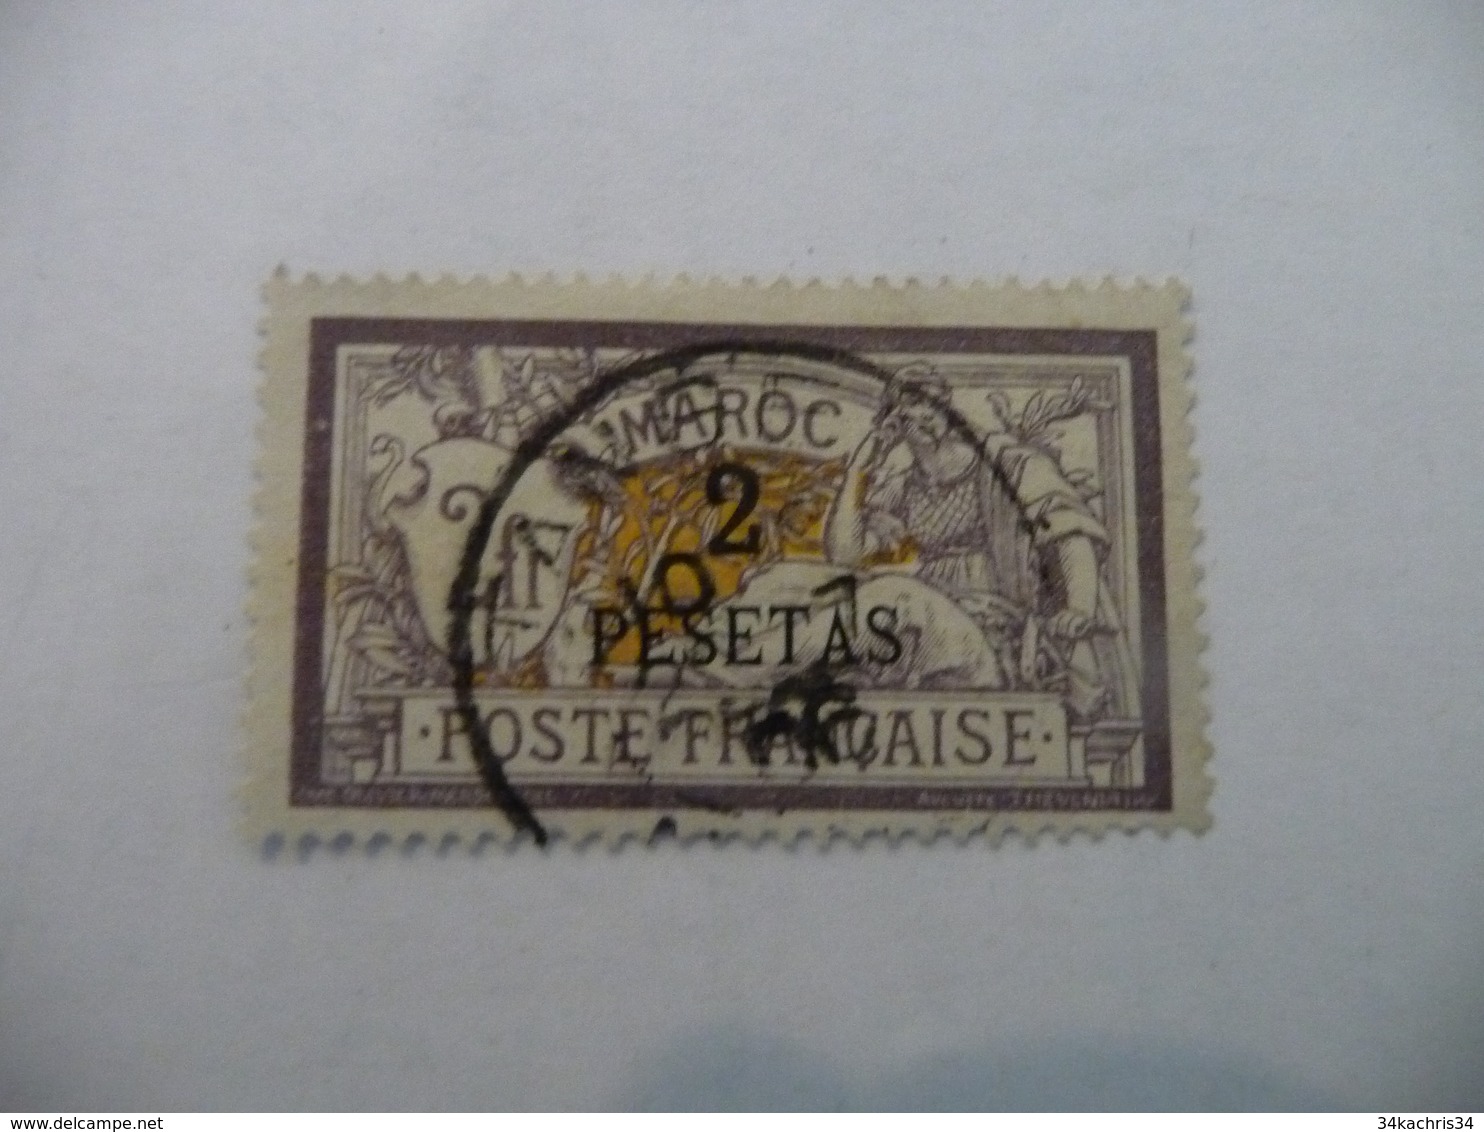 TP Colonies Françaises Maroc Oblitéré N°17 - Used Stamps